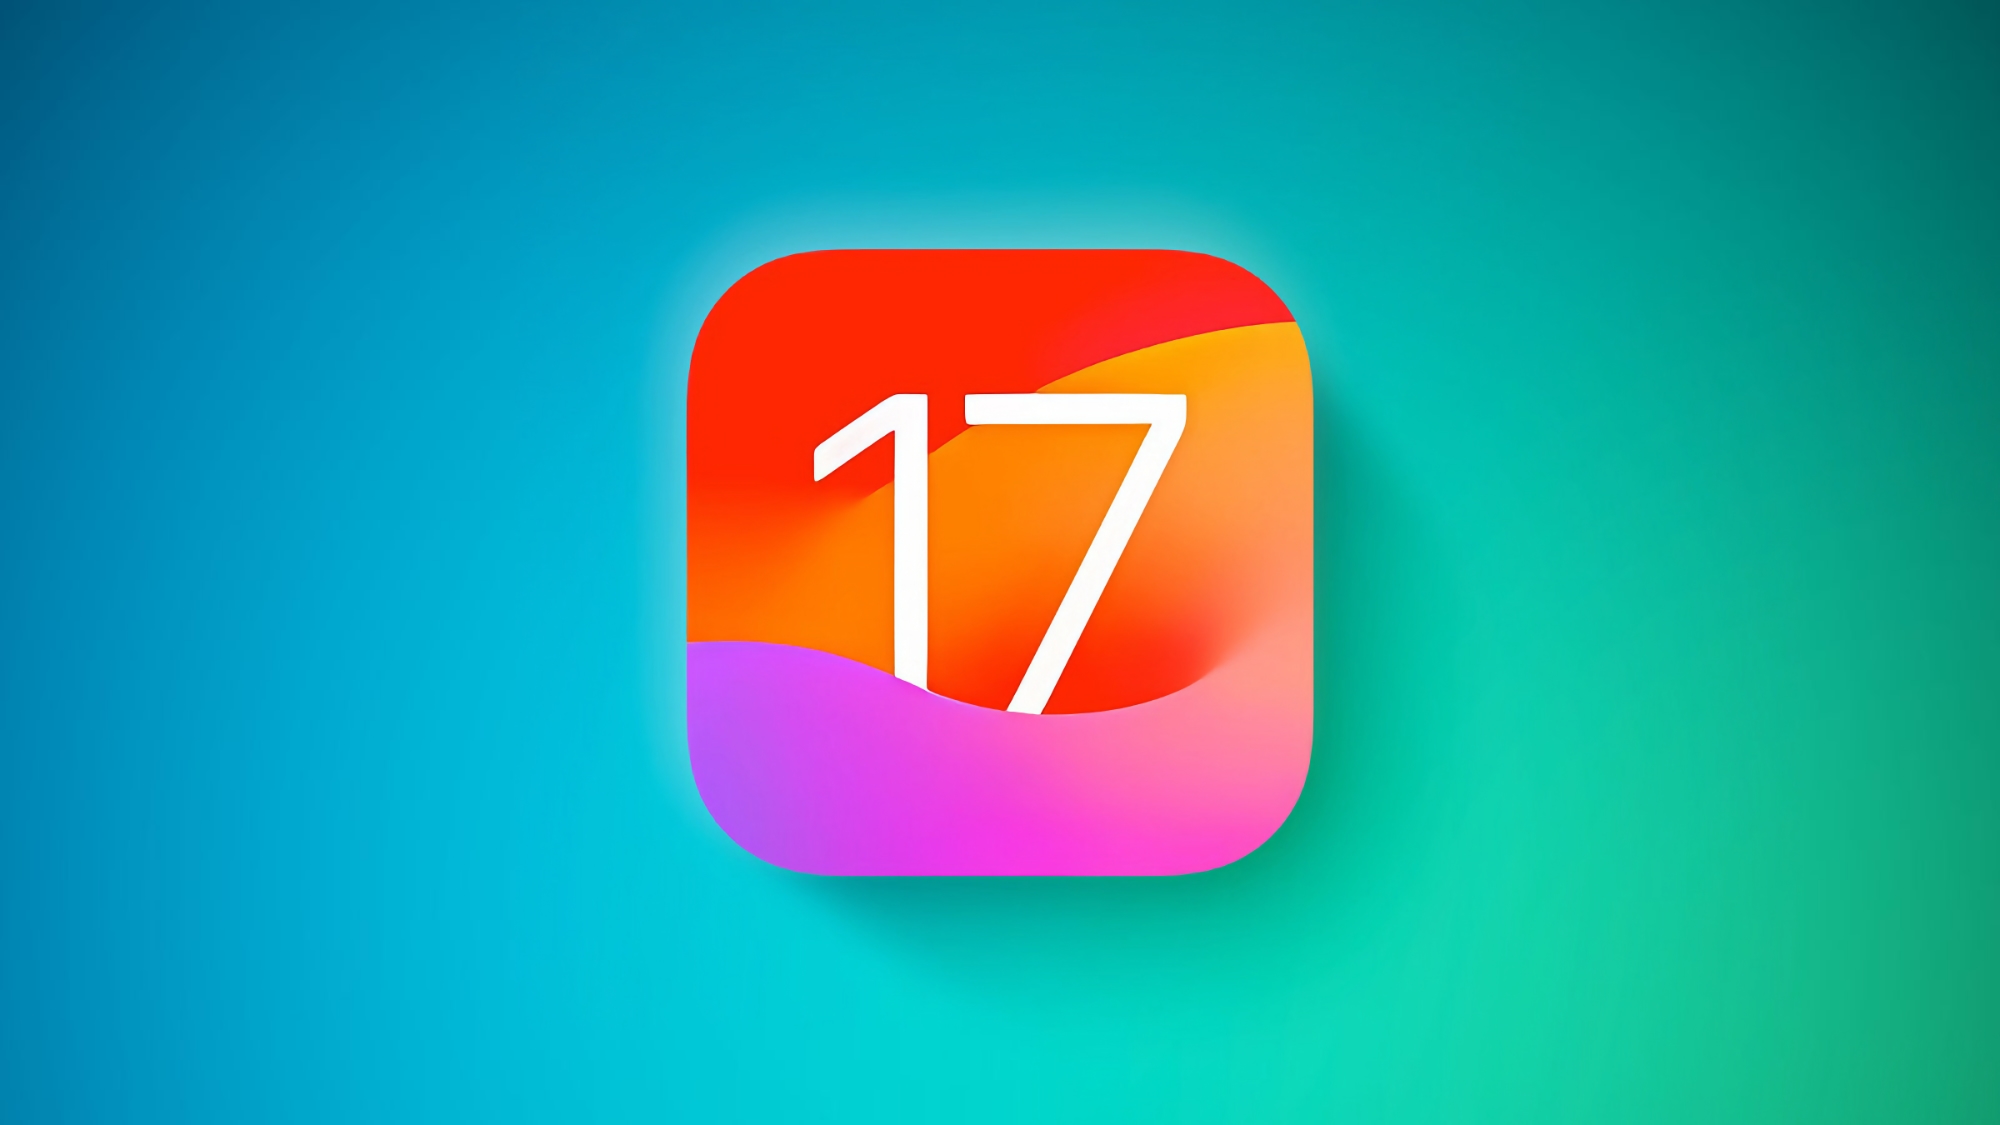 Apple hat iOS 17 Beta 2 veröffentlicht: Was ist neu?